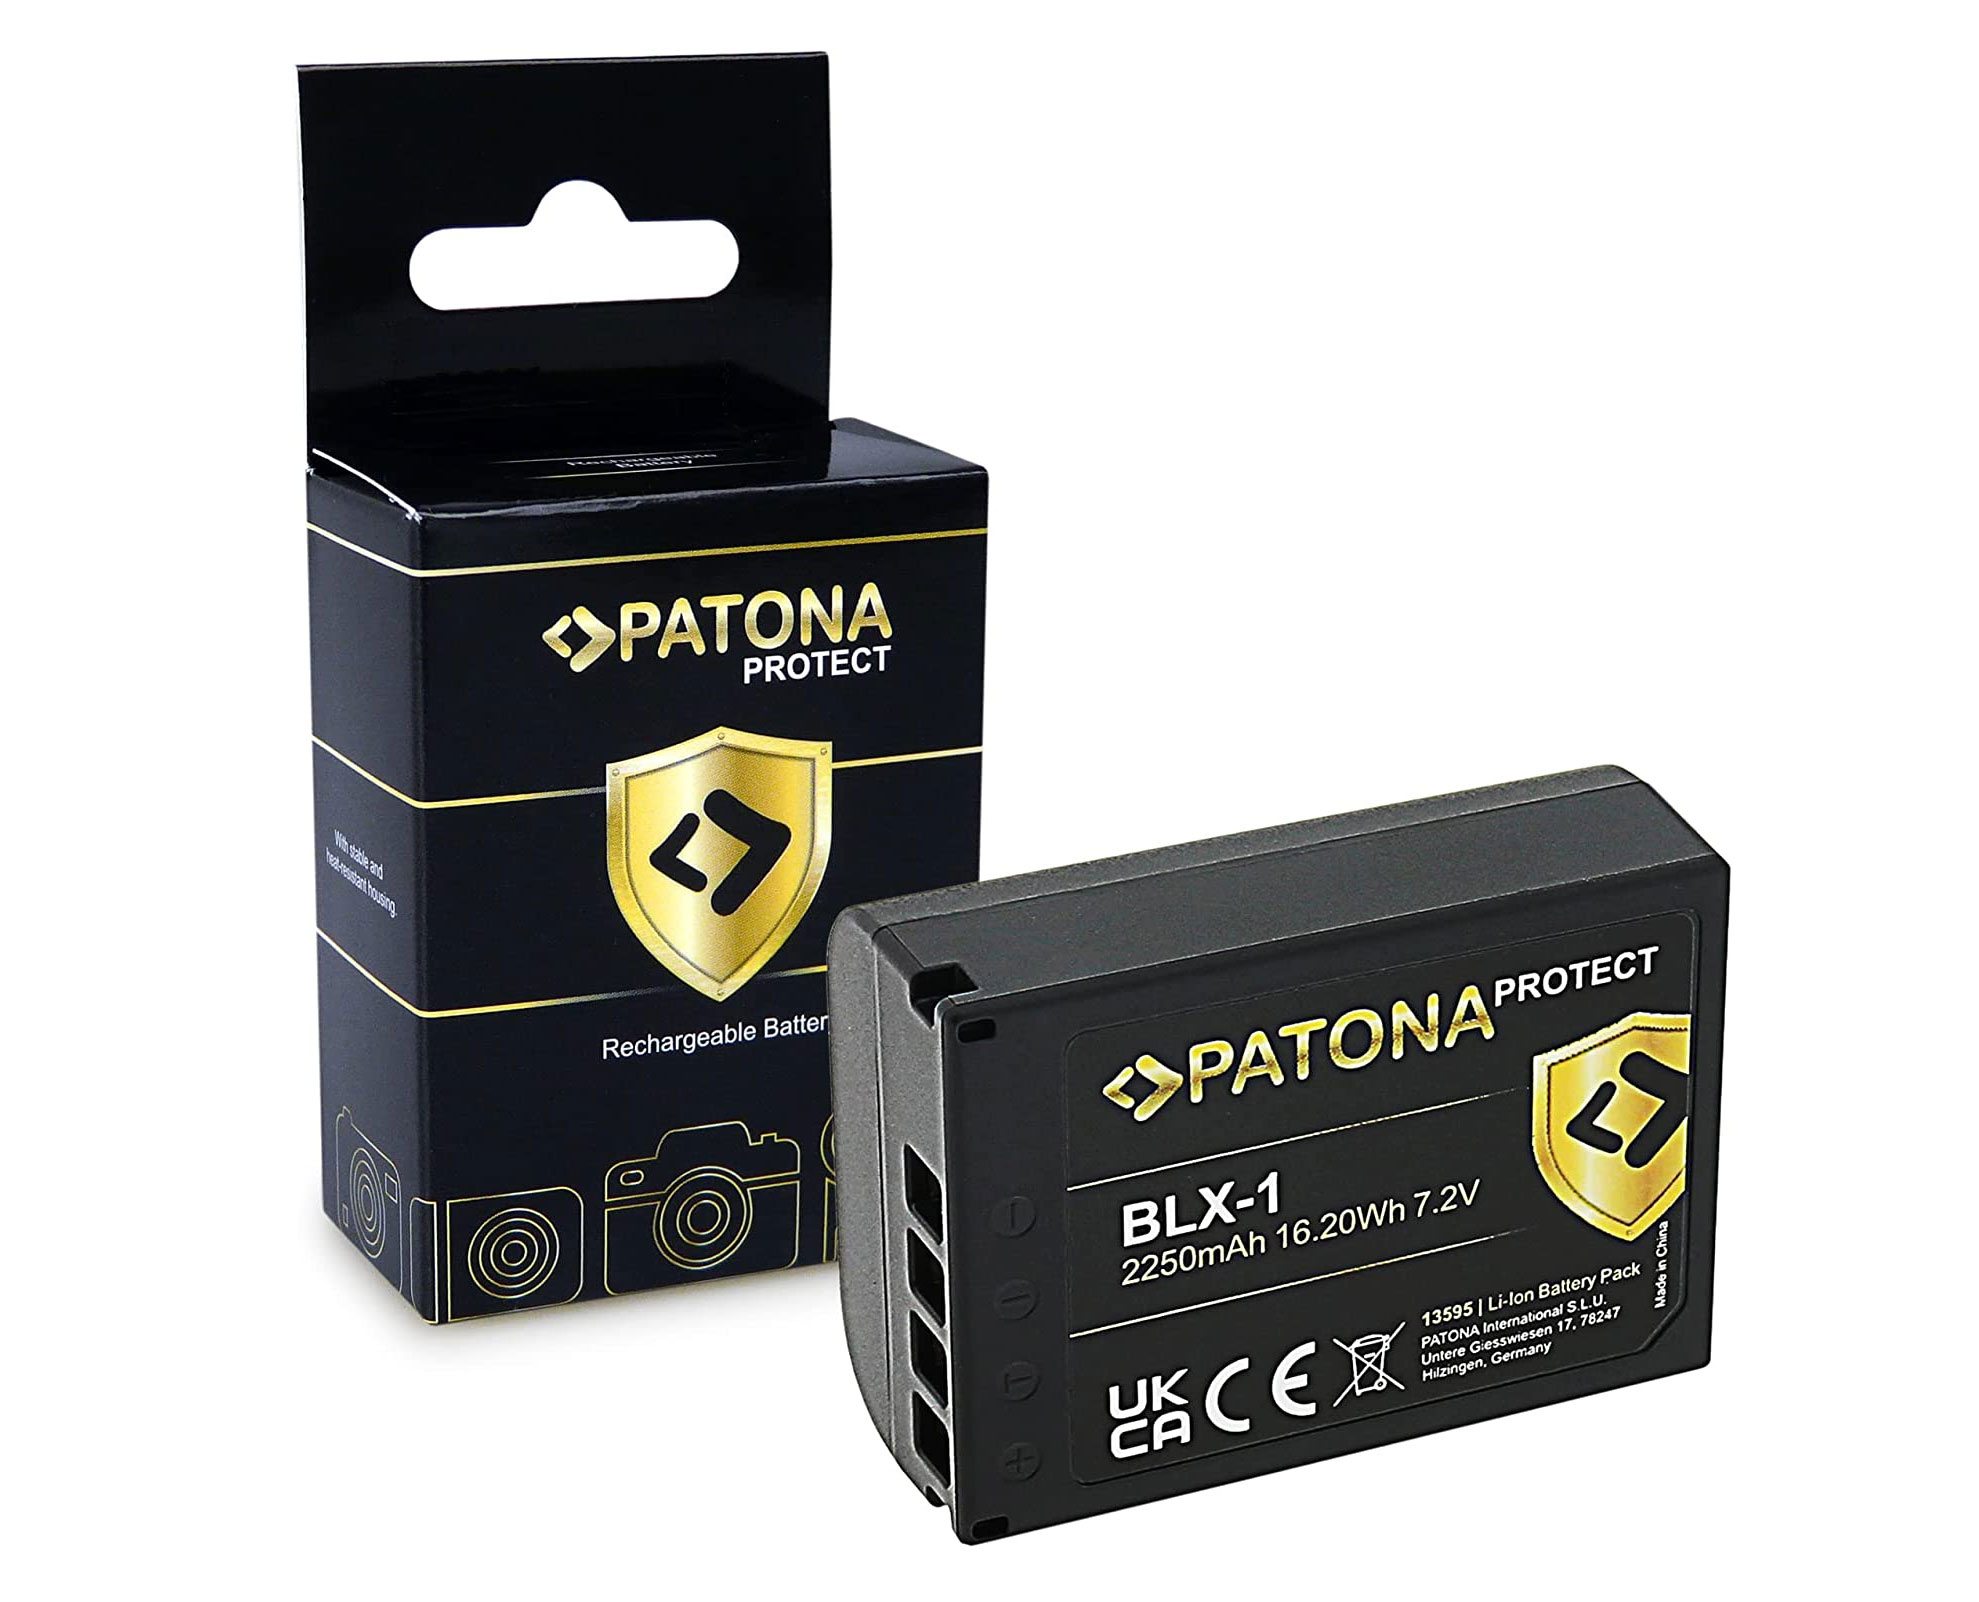 Patona Protect BLX-1